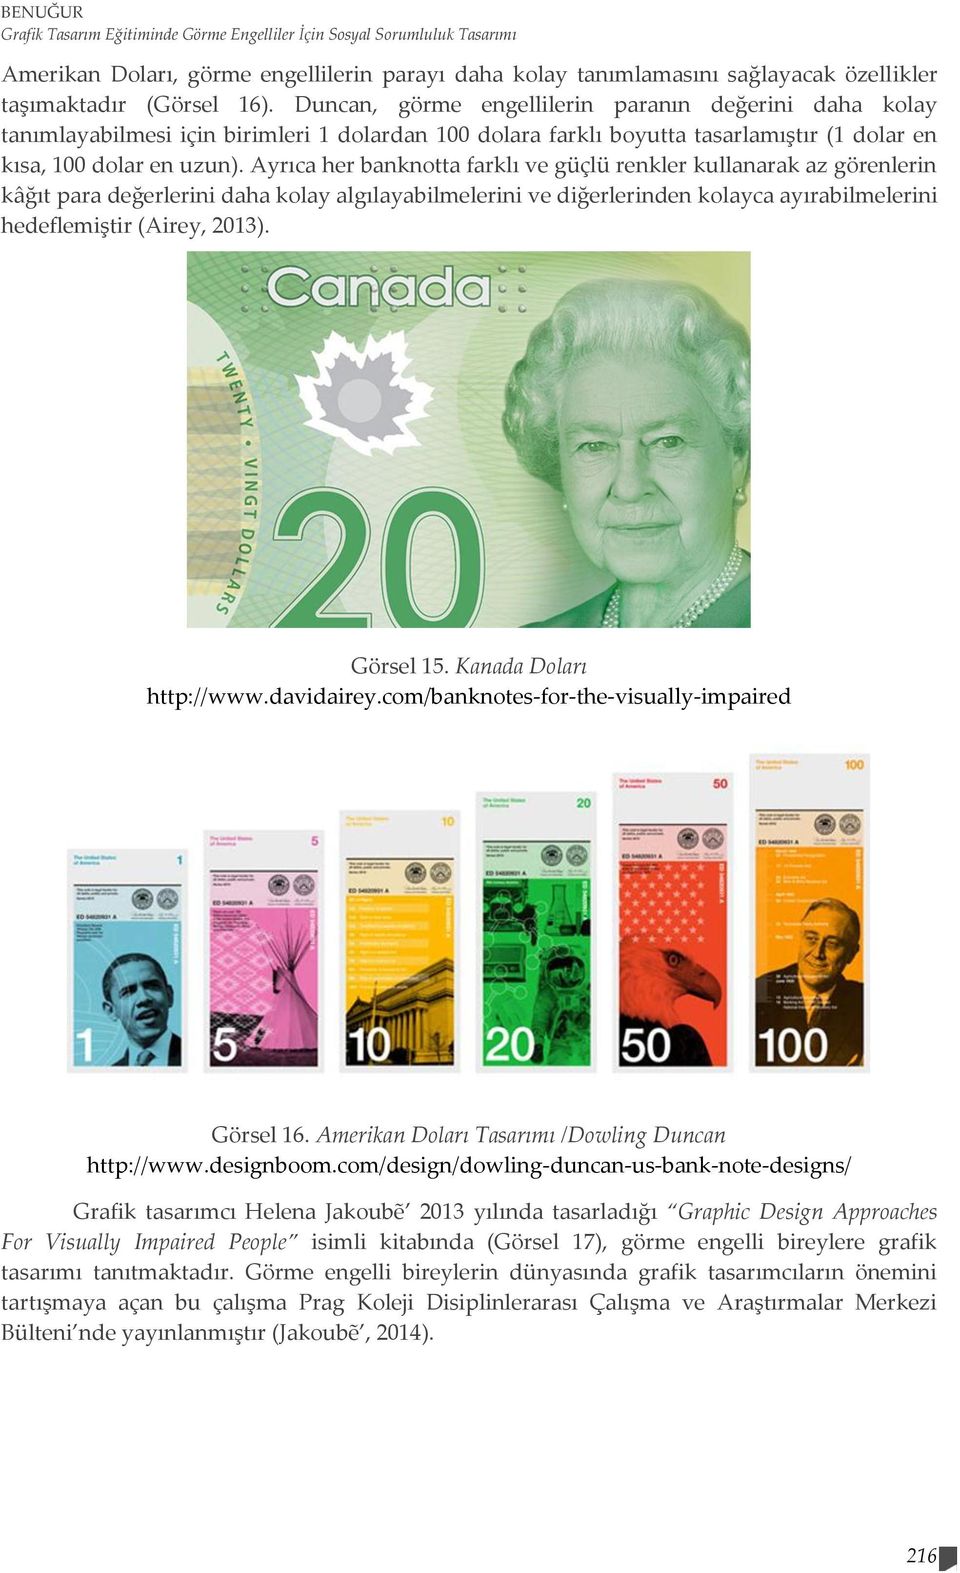 Ayrıca her banknotta farklı ve güçlü renkler kullanarak az görenlerin kâğıt para değerlerini daha kolay algılayabilmelerini ve diğerlerinden kolayca ayırabilmelerini hedeflemiştir (Airey, 2013).